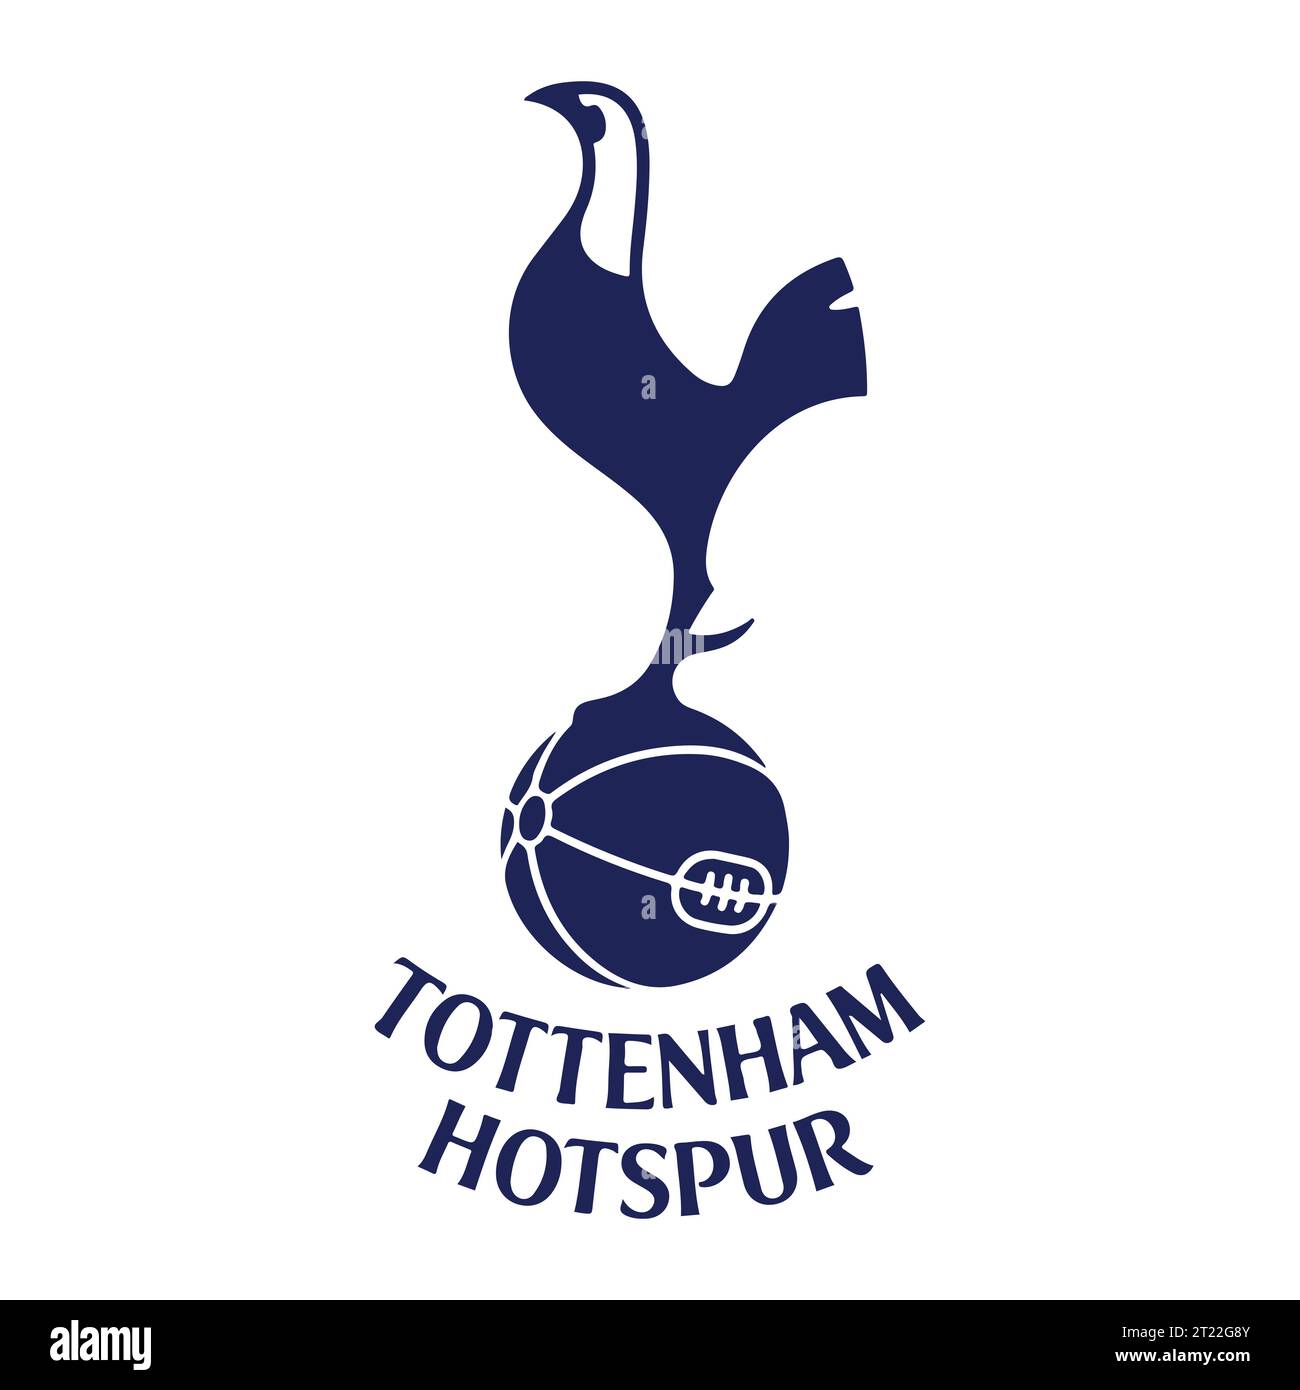 Tottenham Hotspur FC Logo colorato sistema di campionato di calcio professionistico inglese, illustrazione vettoriale immagine astratta Illustrazione Vettoriale